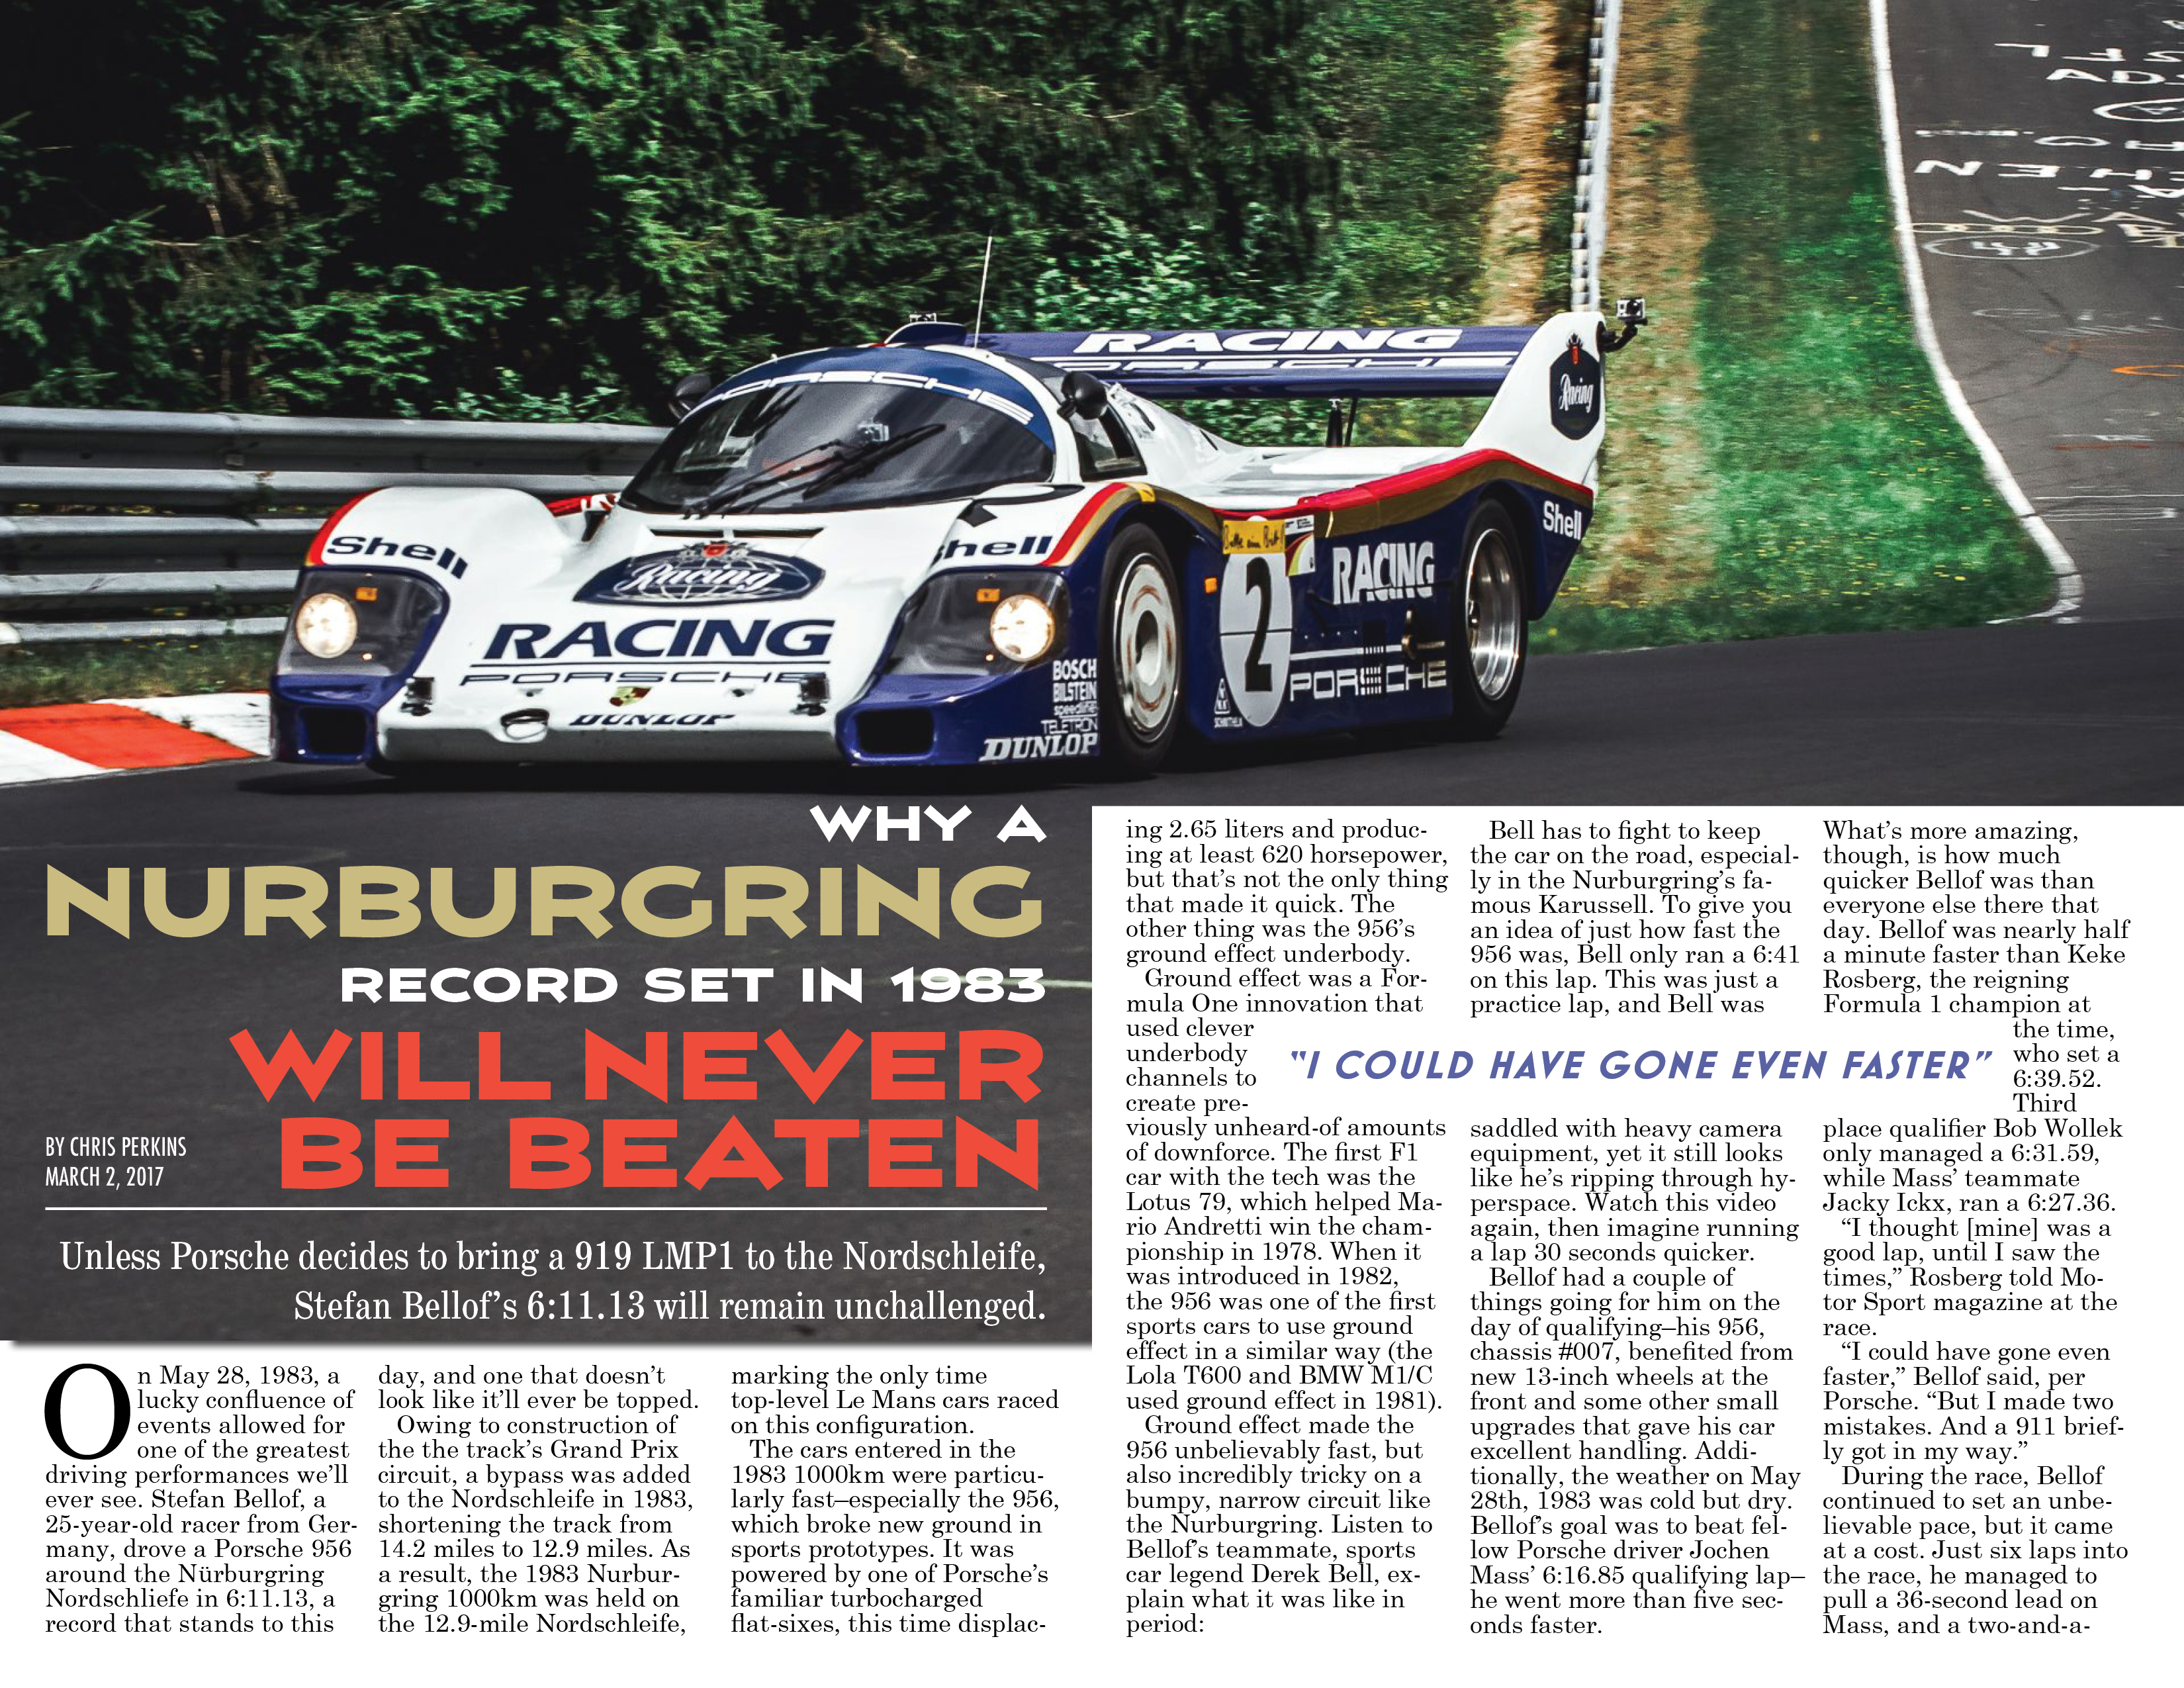 Stefan Bellof Nurburgring Magazine Layout